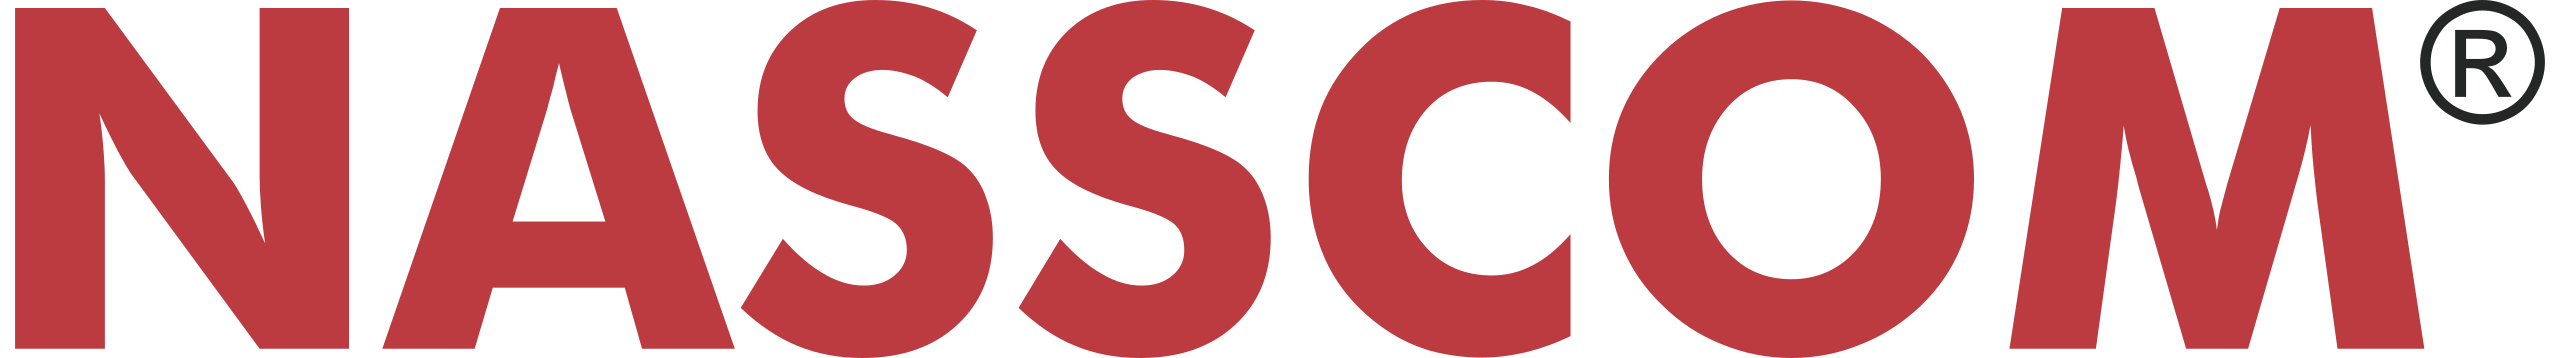 Nassccom logo